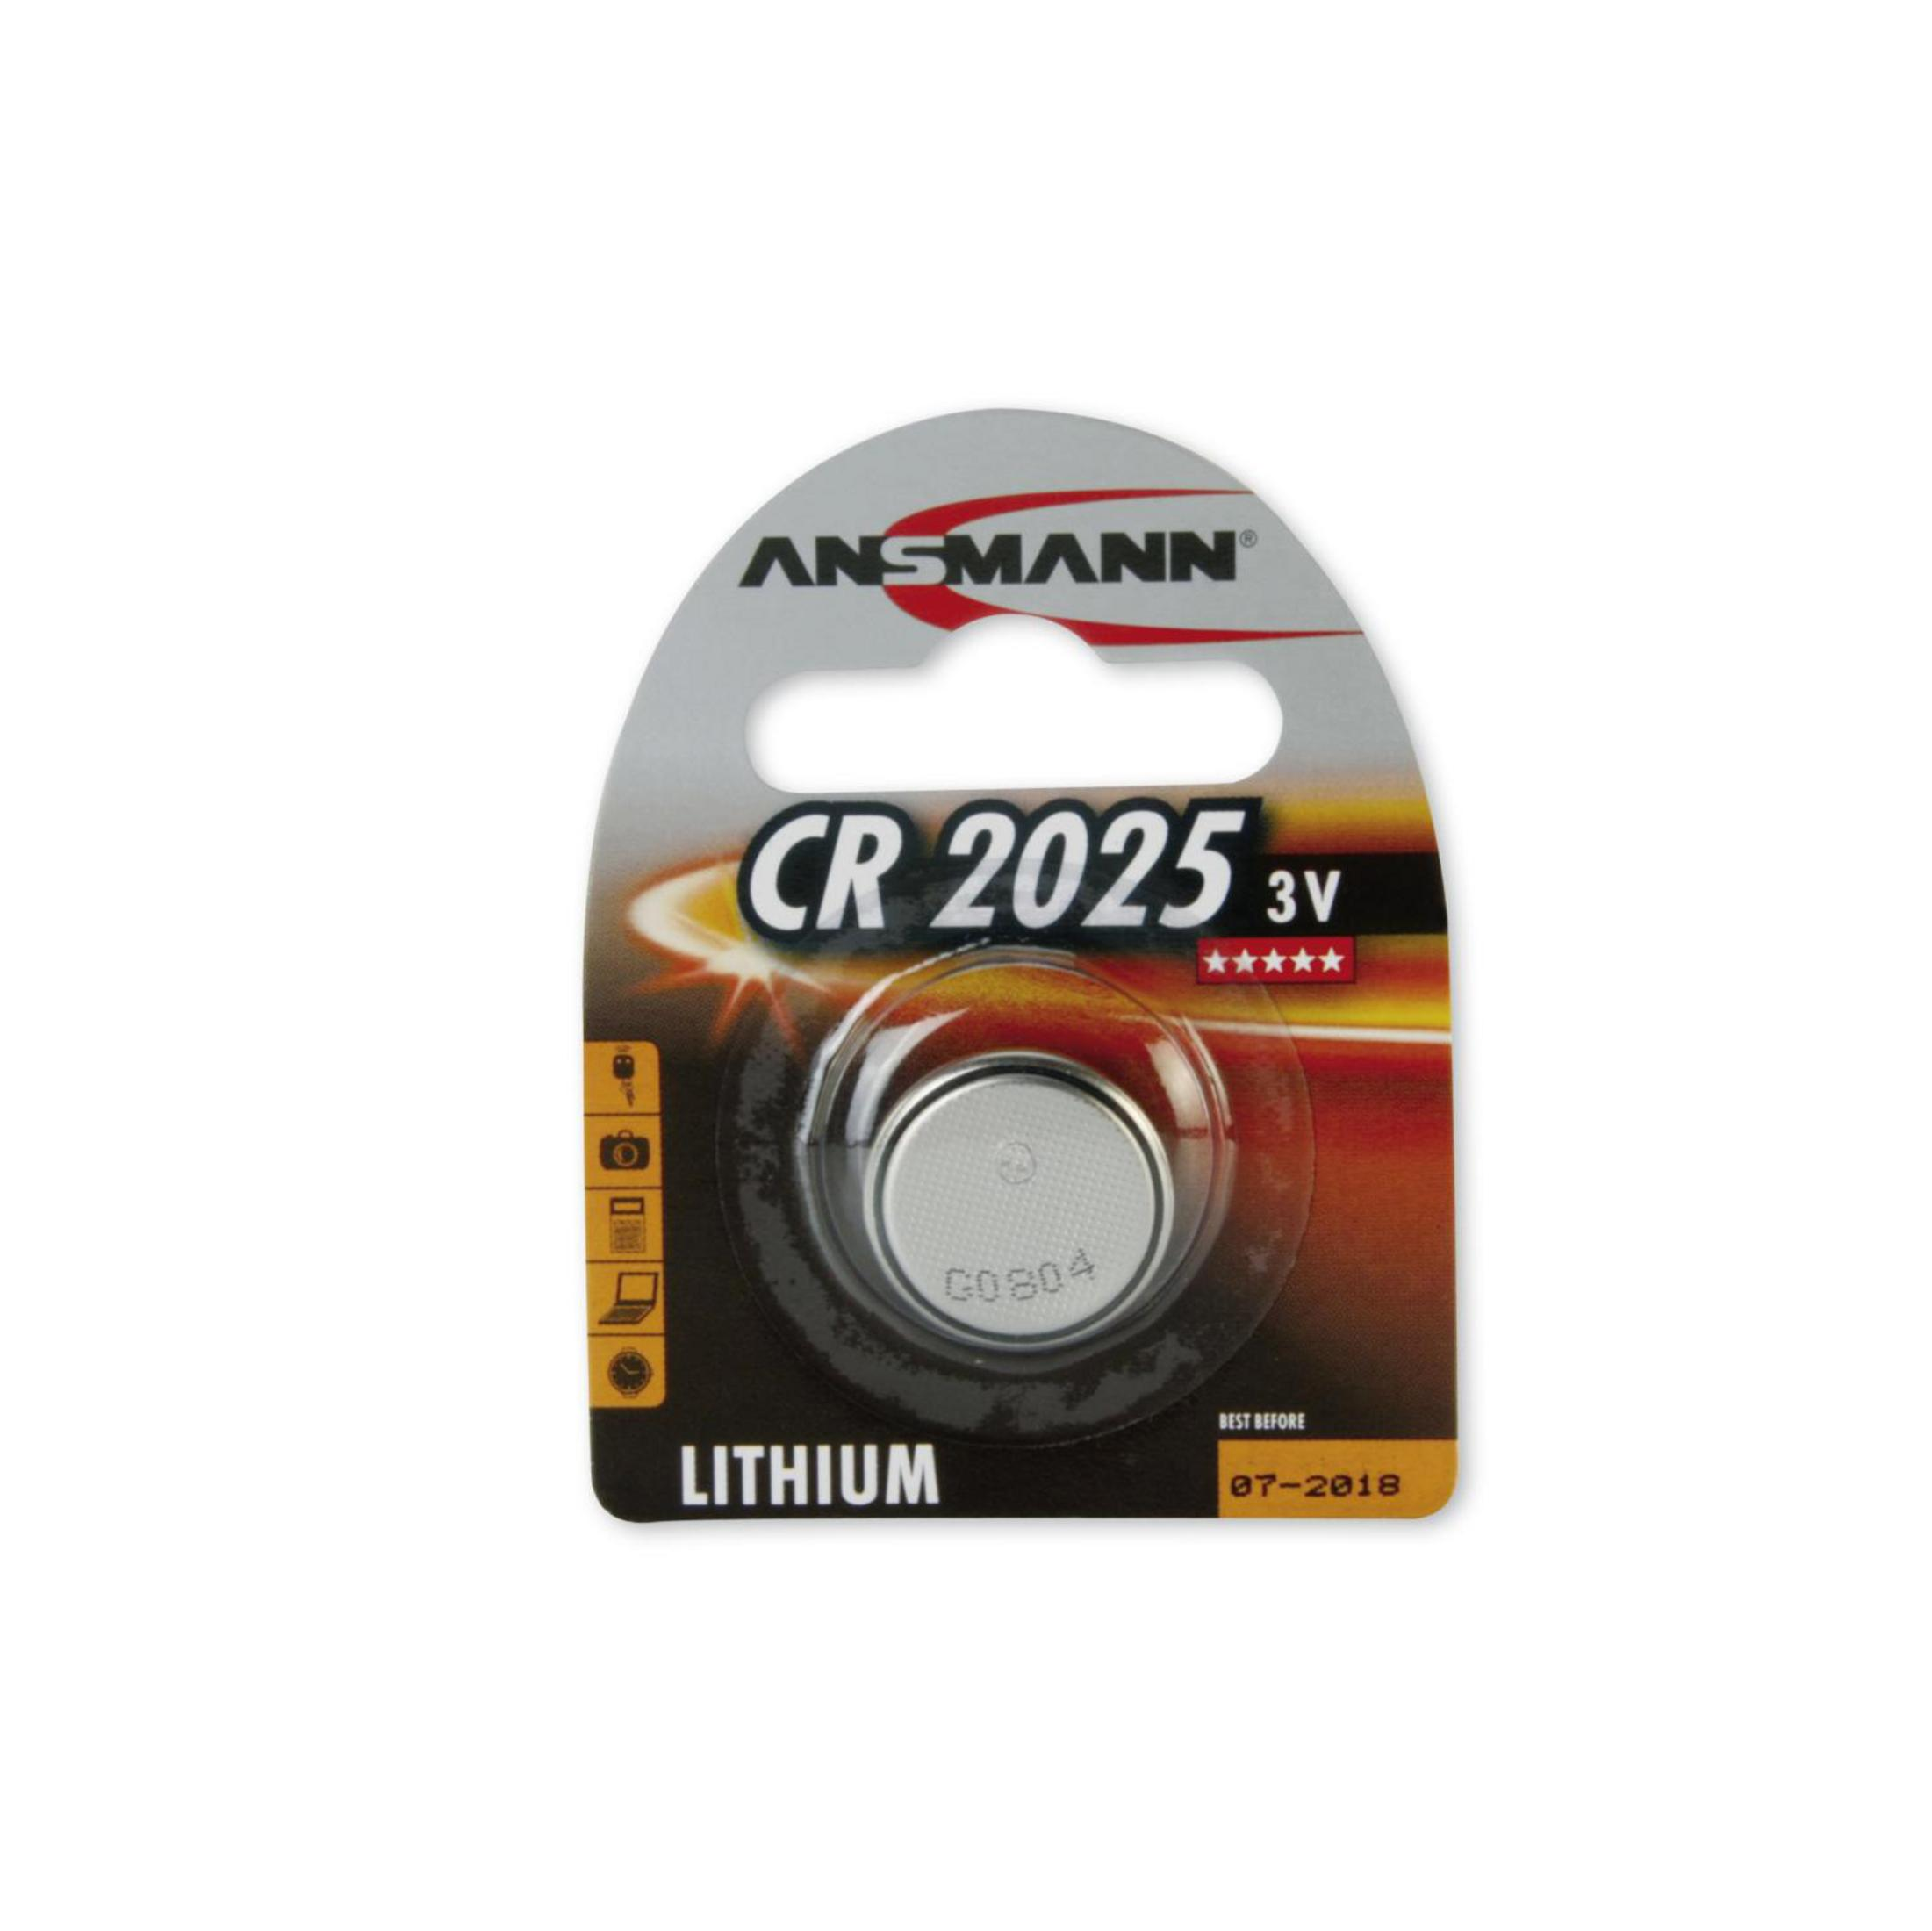 3 Stück 3V ANSMANN Lithium Lithium, 5020142 / Volt Strom CR2025 Licht Energie / ANSMANN 1 Knopfzellen Knopfzelle Knopfzellen,